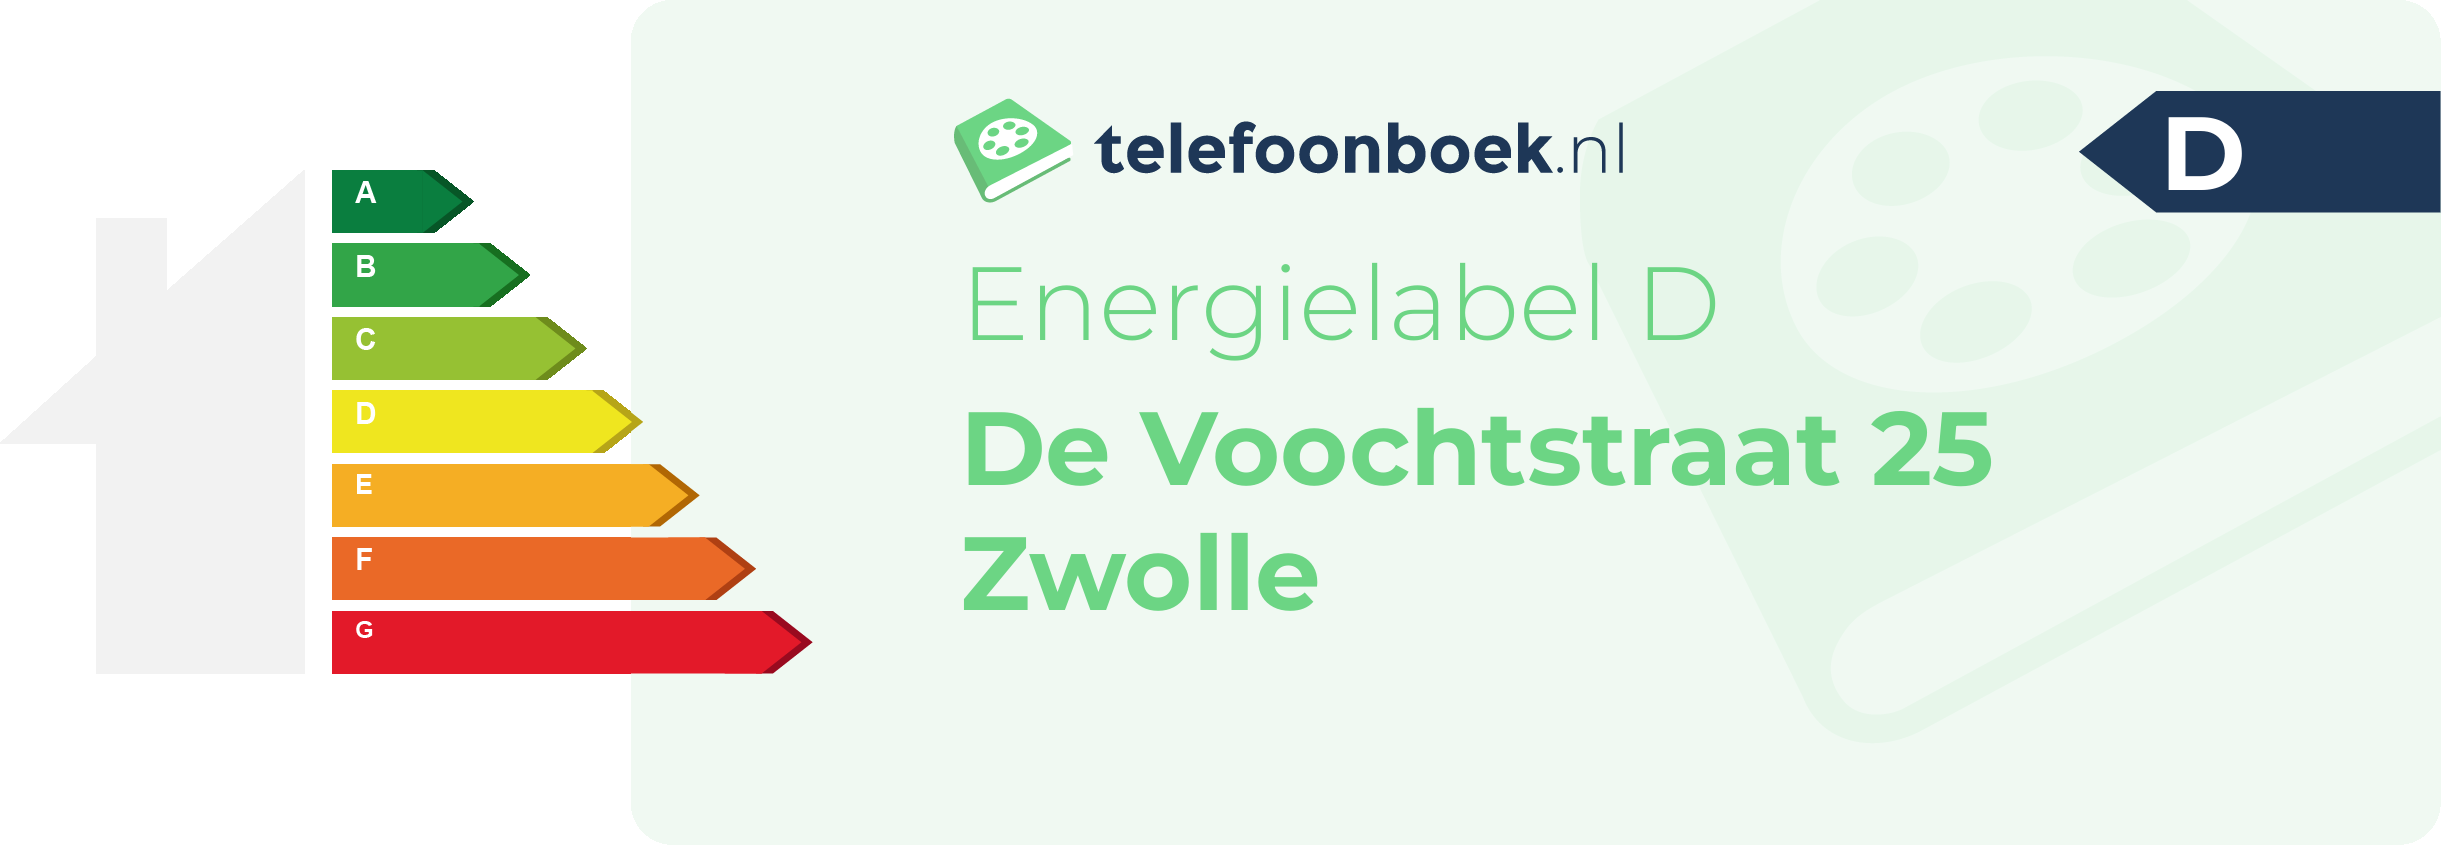 Energielabel De Voochtstraat 25 Zwolle